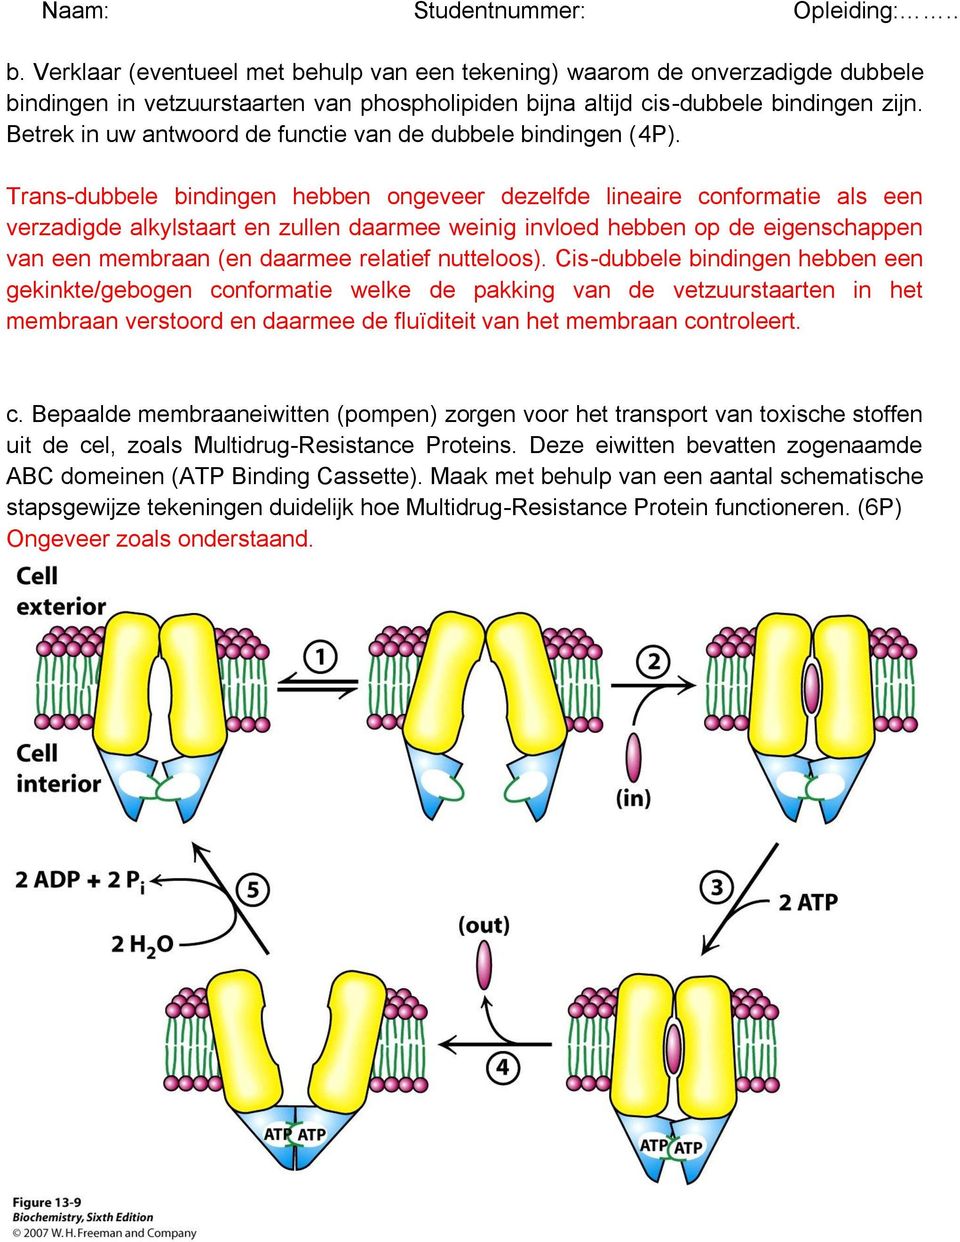 Trans-dubbele bindingen hebben ongeveer dezelfde lineaire conformatie als een verzadigde alkylstaart en zullen daarmee weinig invloed hebben op de eigenschappen van een membraan (en daarmee relatief